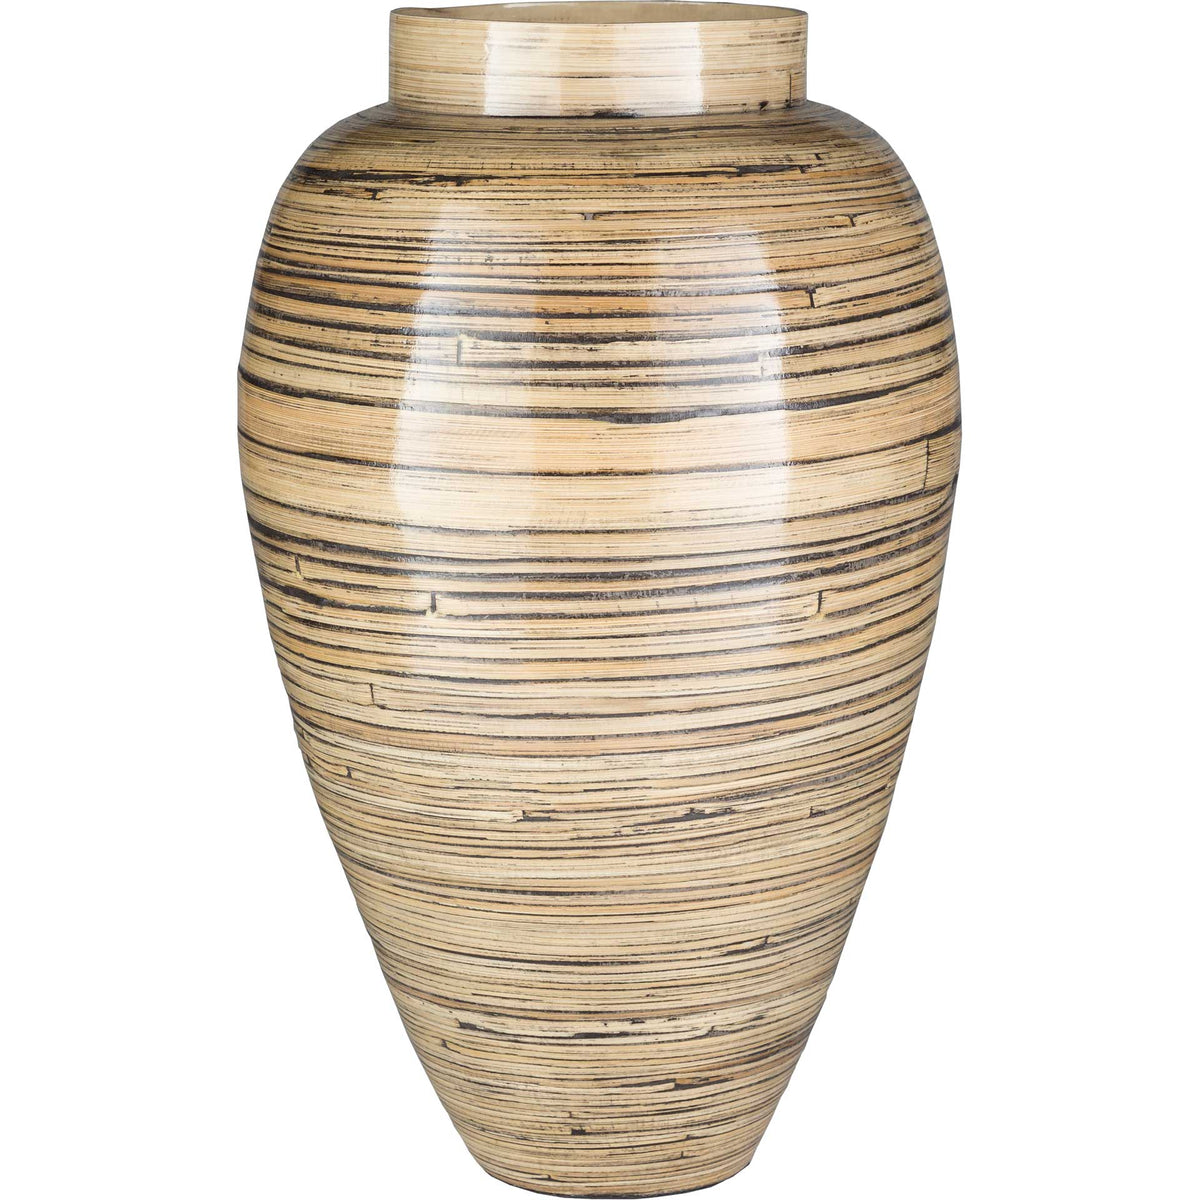 Cordin Garden Vase Natural Medium